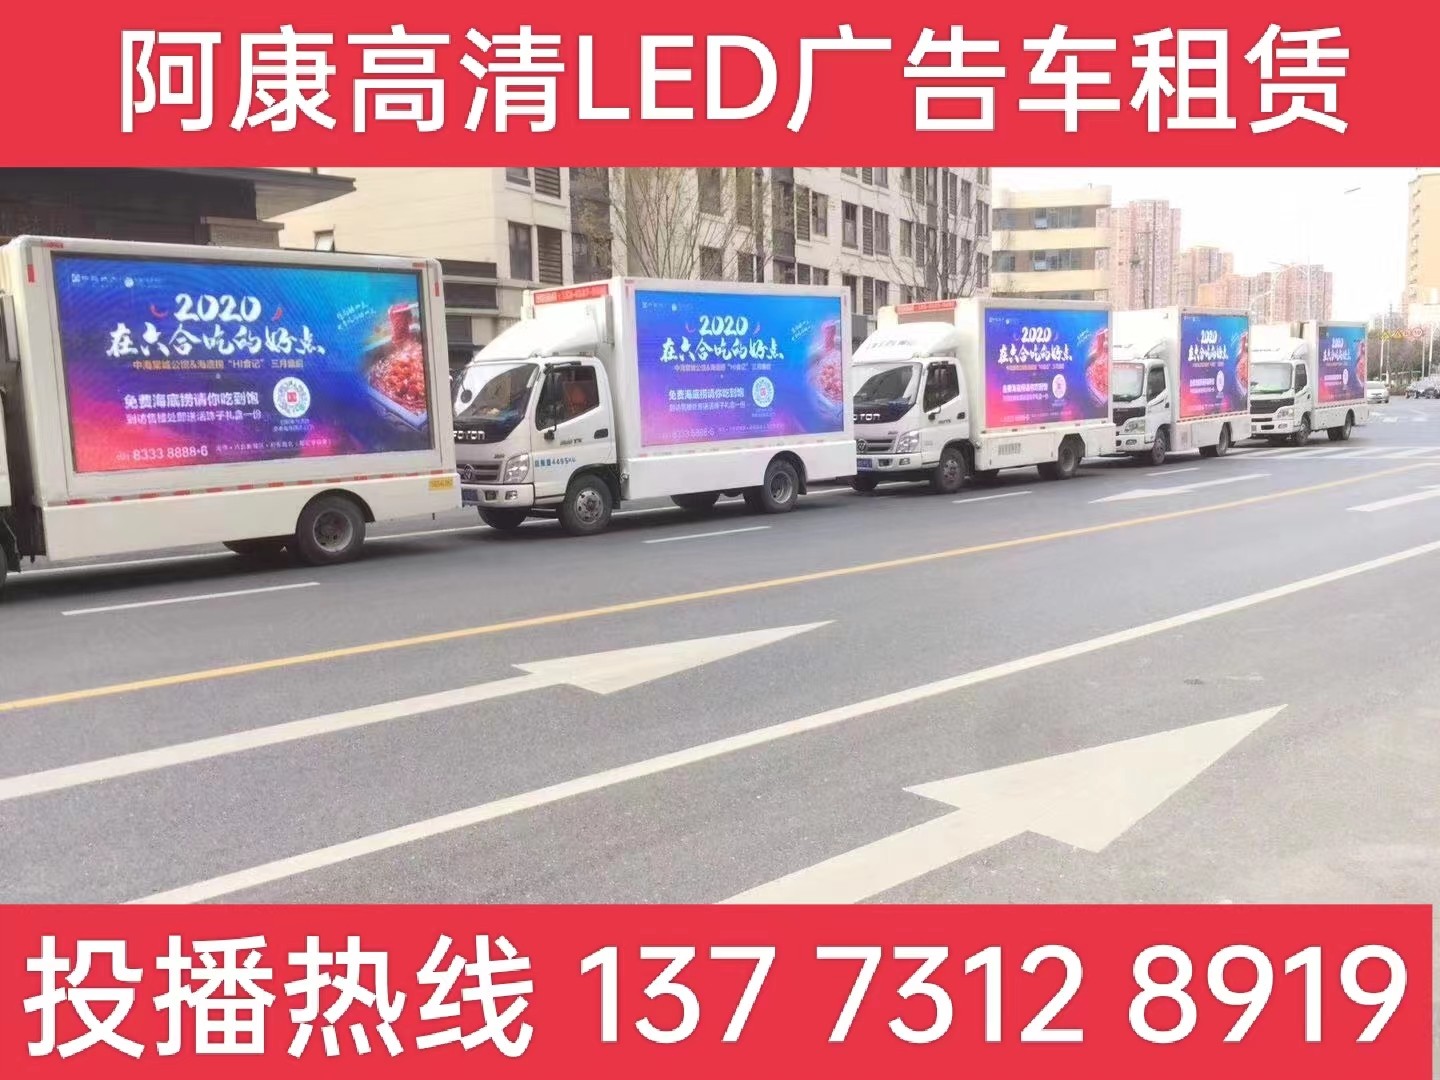 南通市宣传车出租-海底捞LED广告